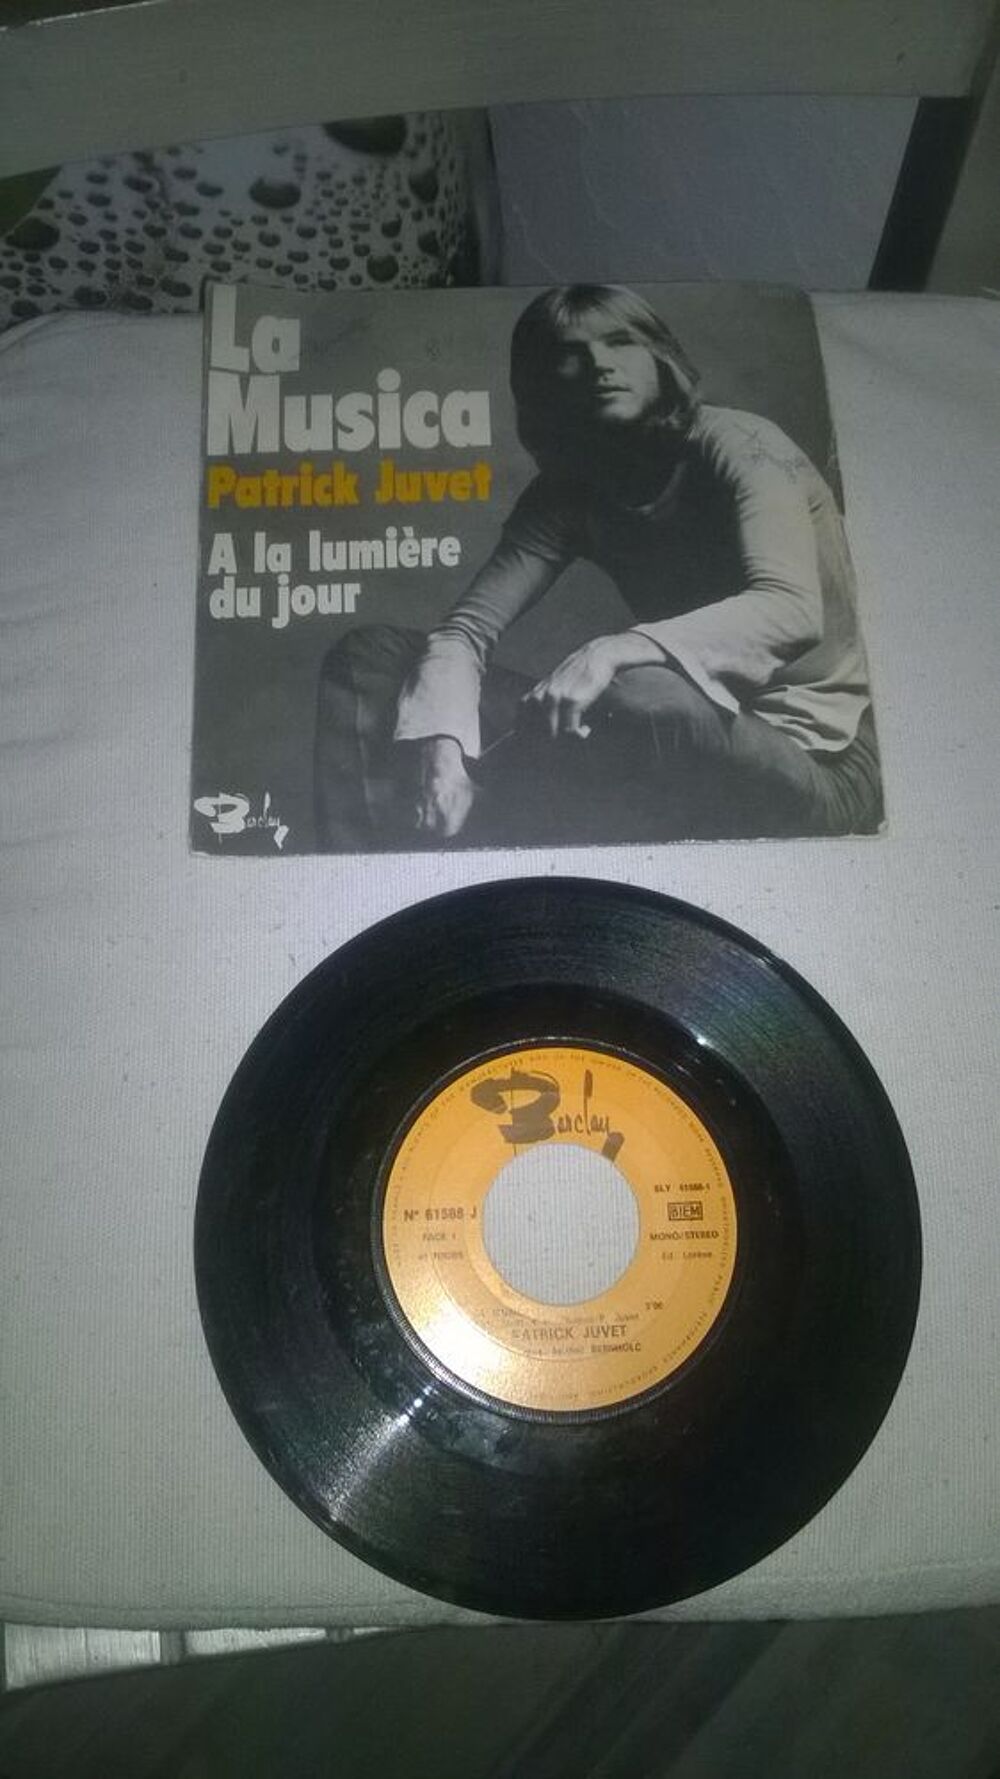 Vinyle 45 T Patrick Juvet
La Musica
1972
Excellent etat
CD et vinyles